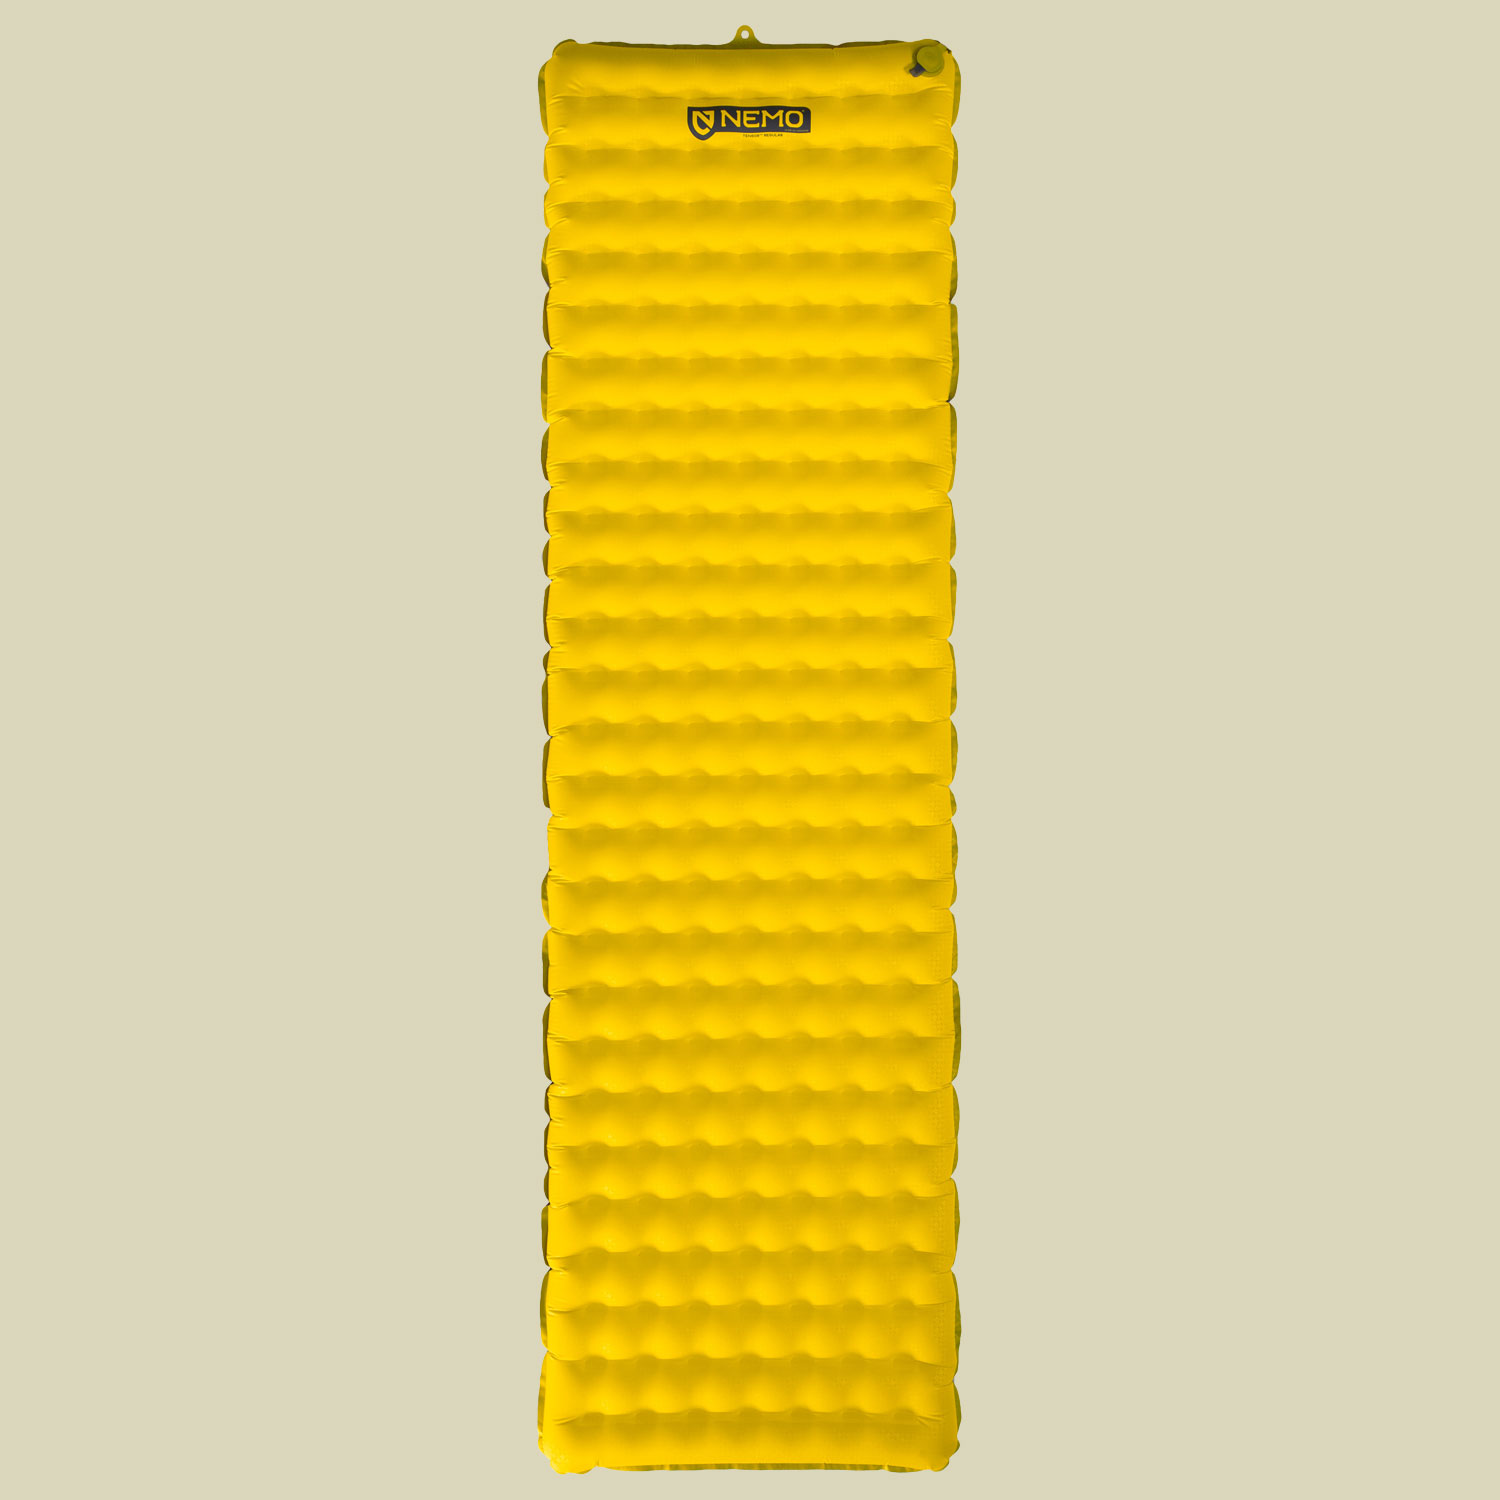 Tensor Sleeping Pad Liegefläche 183 x 51 cm REGULAR Farbe goldfinch